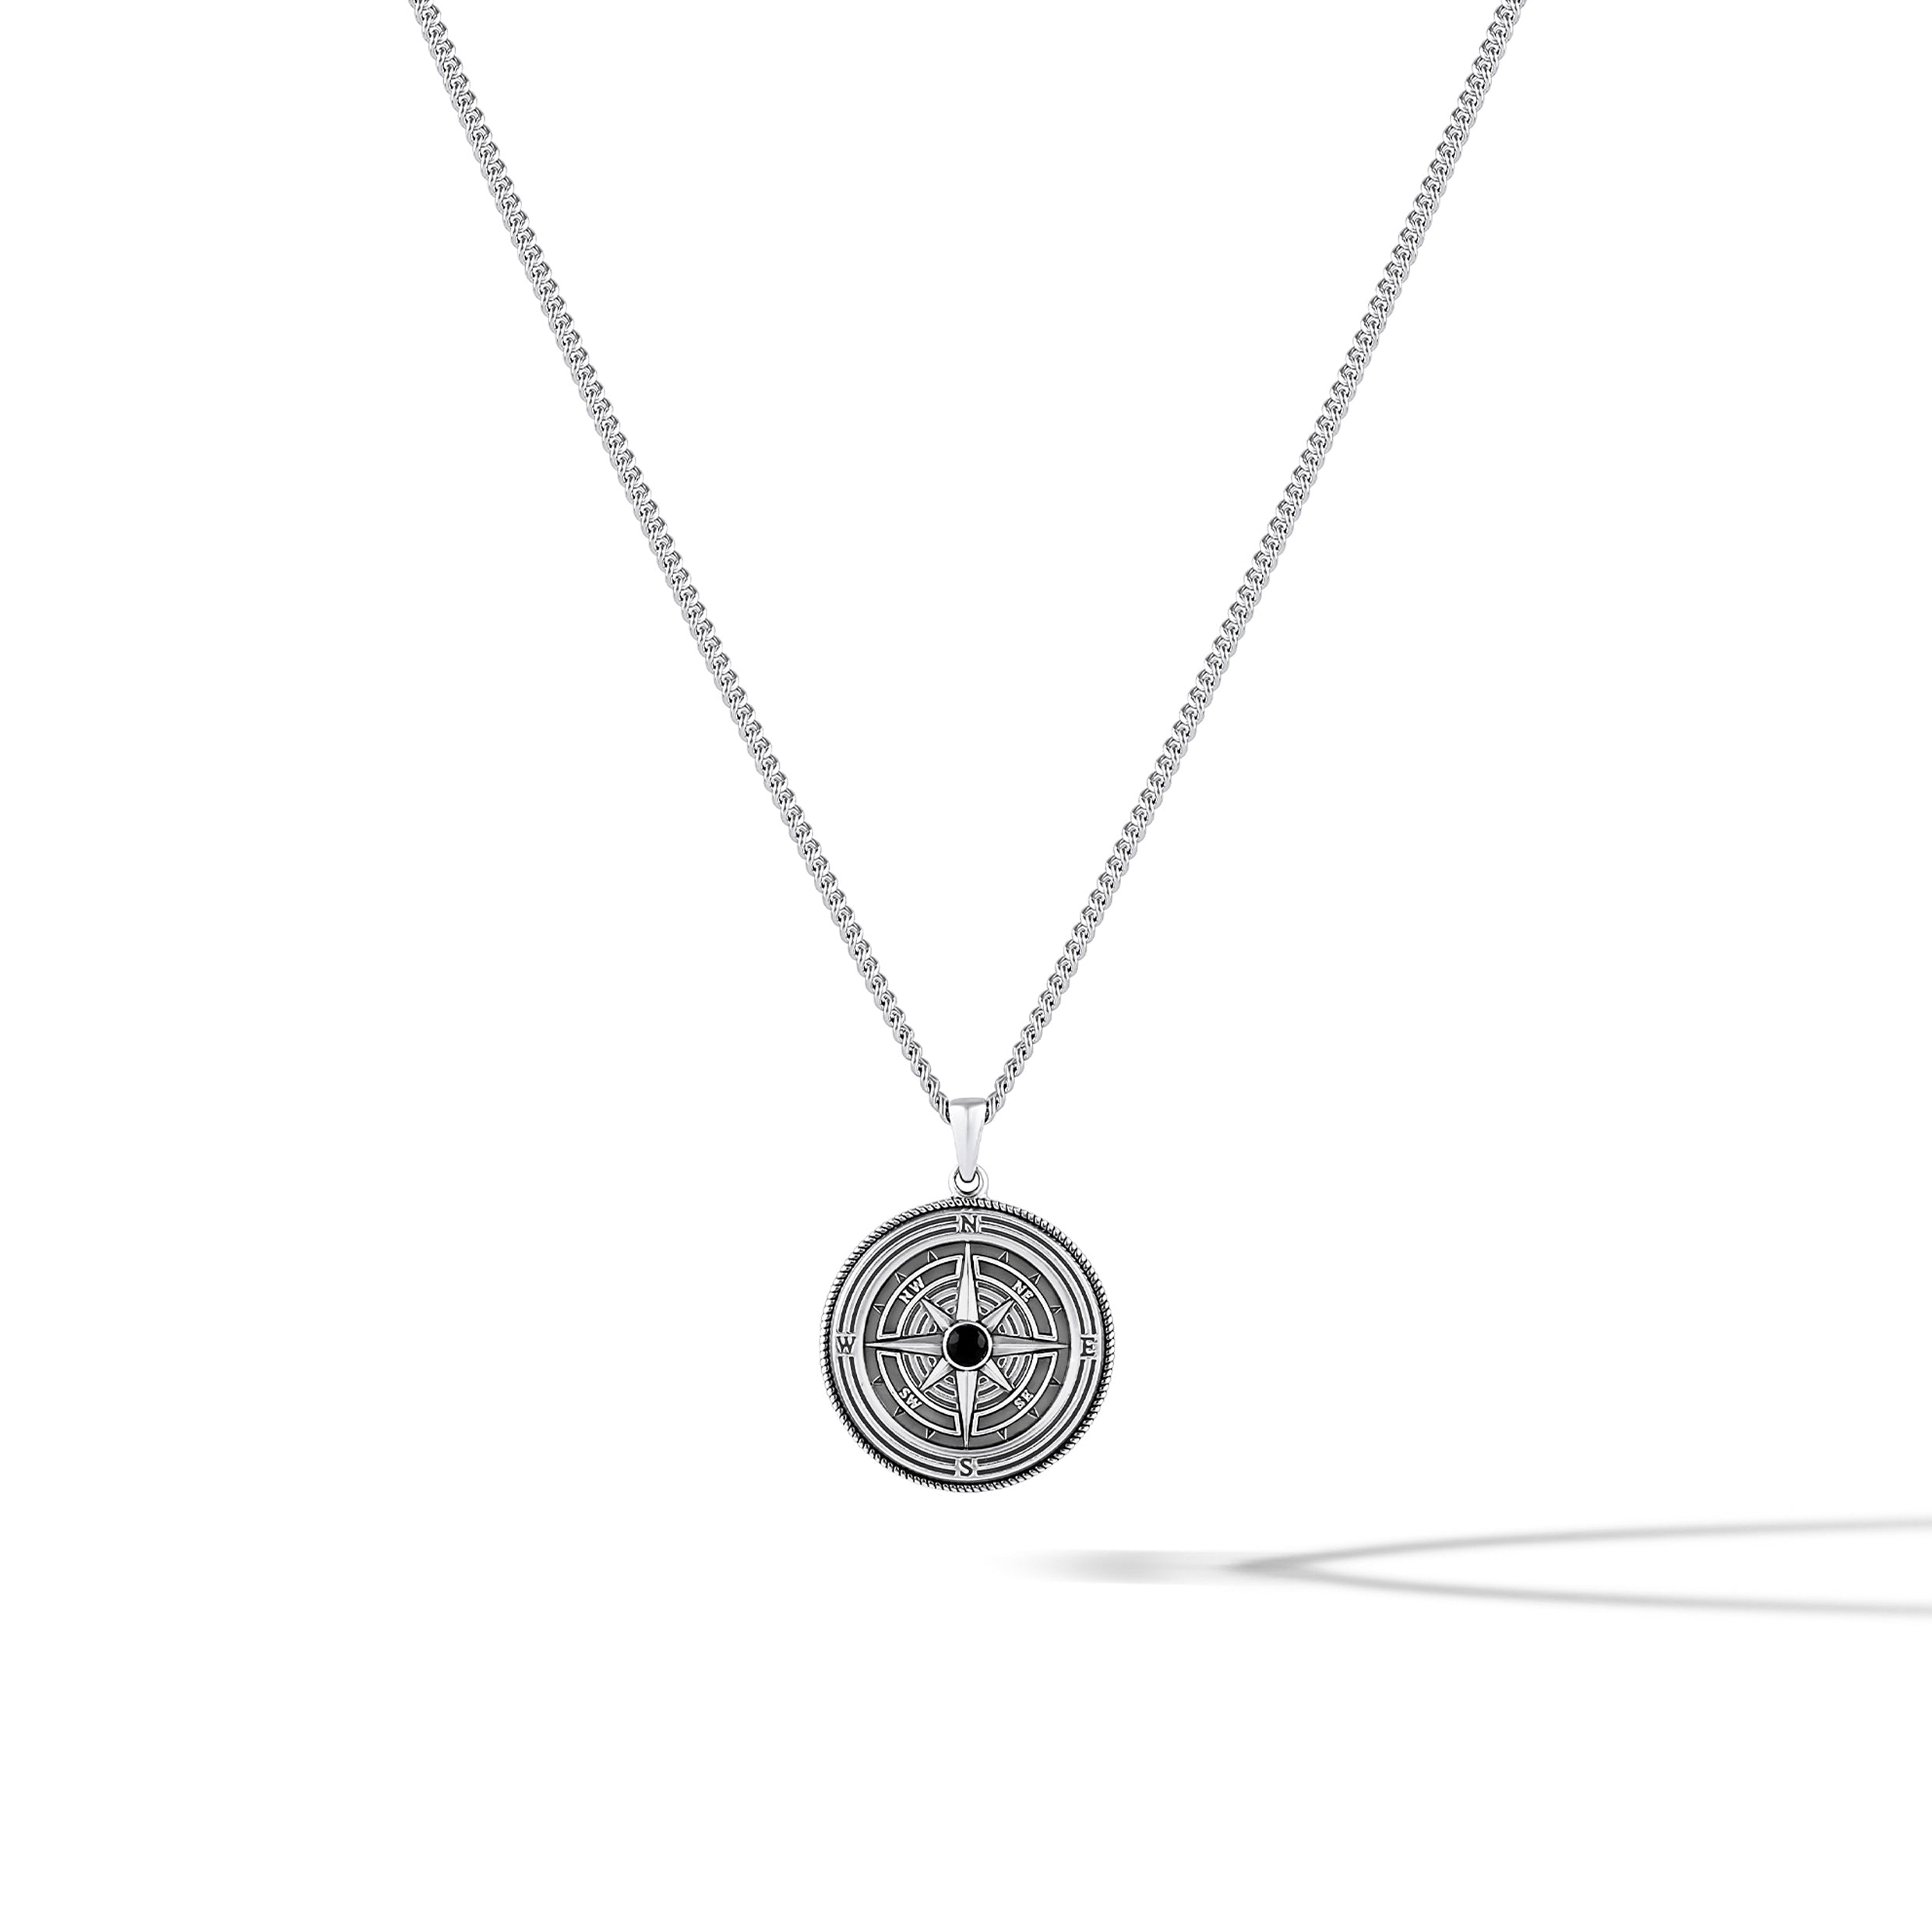 Ek Onkar Compass Pendant Necklace | Compass pendant, Pendant, Metal chain